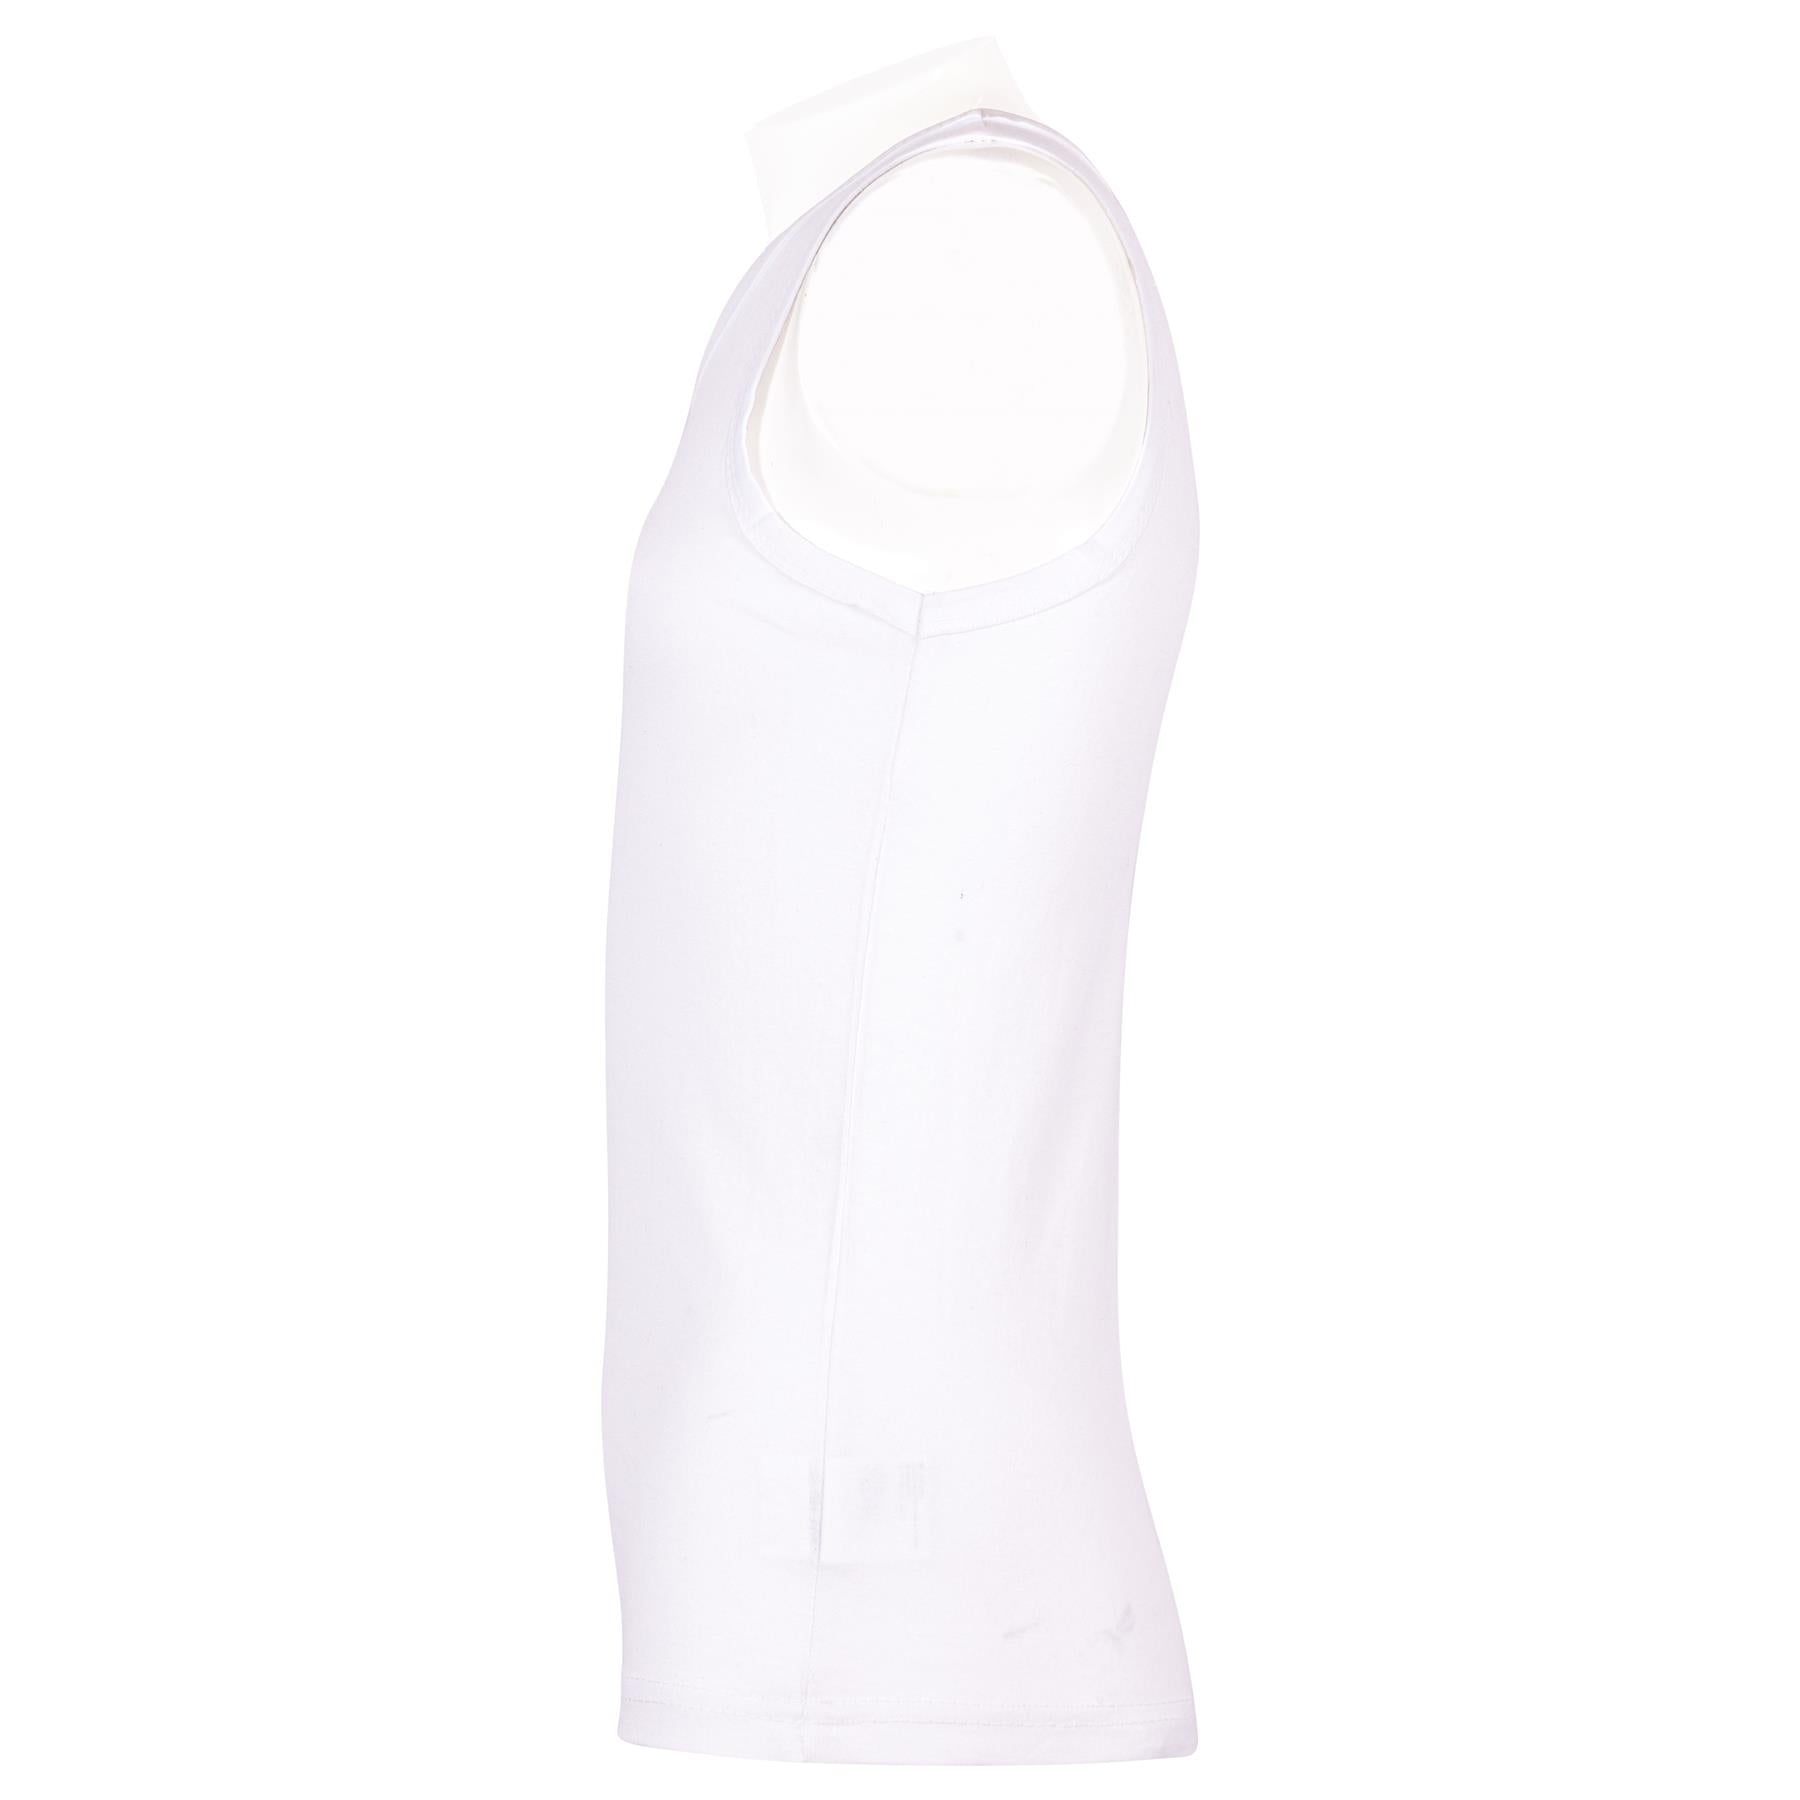 Kids Boys 5 Pack Vest Top 100% Cotton Fashion Underwear Sleeveless Summer Vest